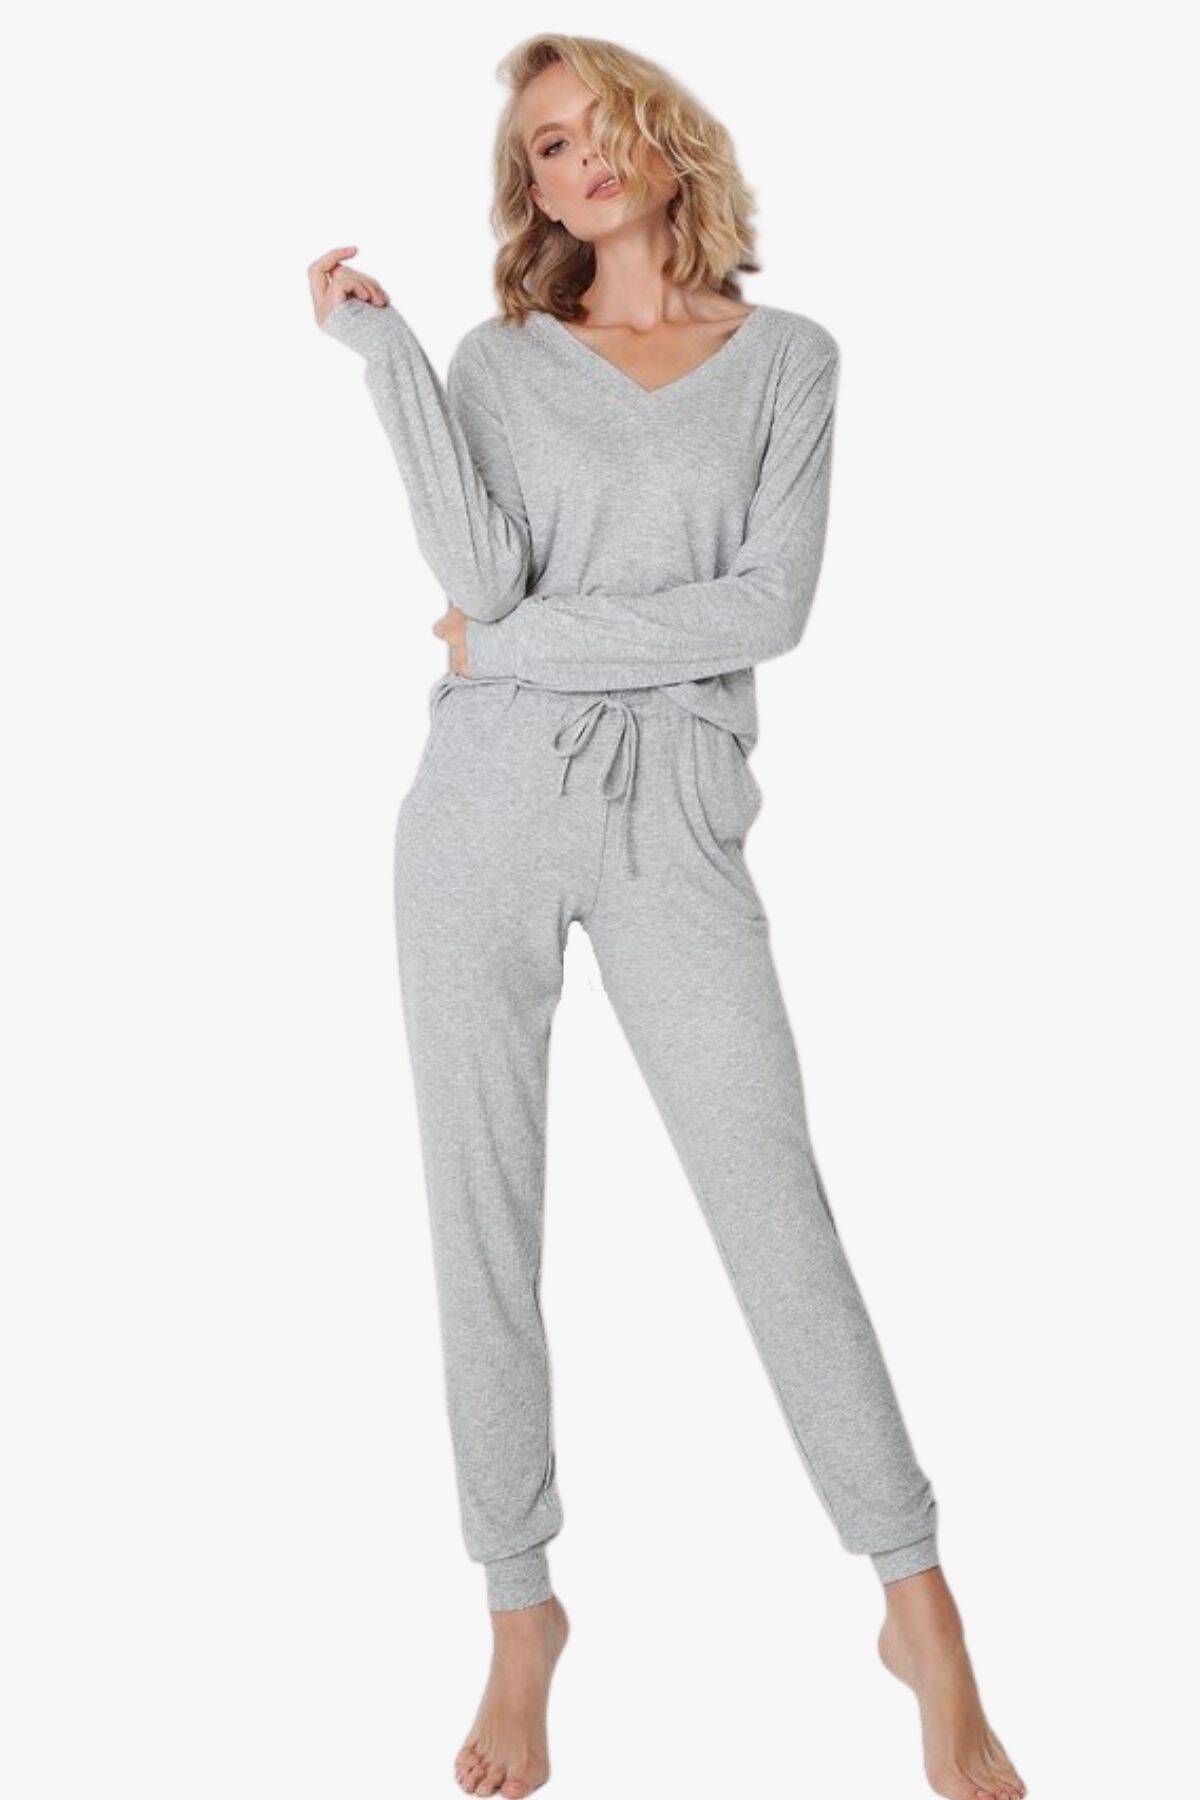 Пижама женская с брюками ARUELLE Tina set grey, grey вид 0